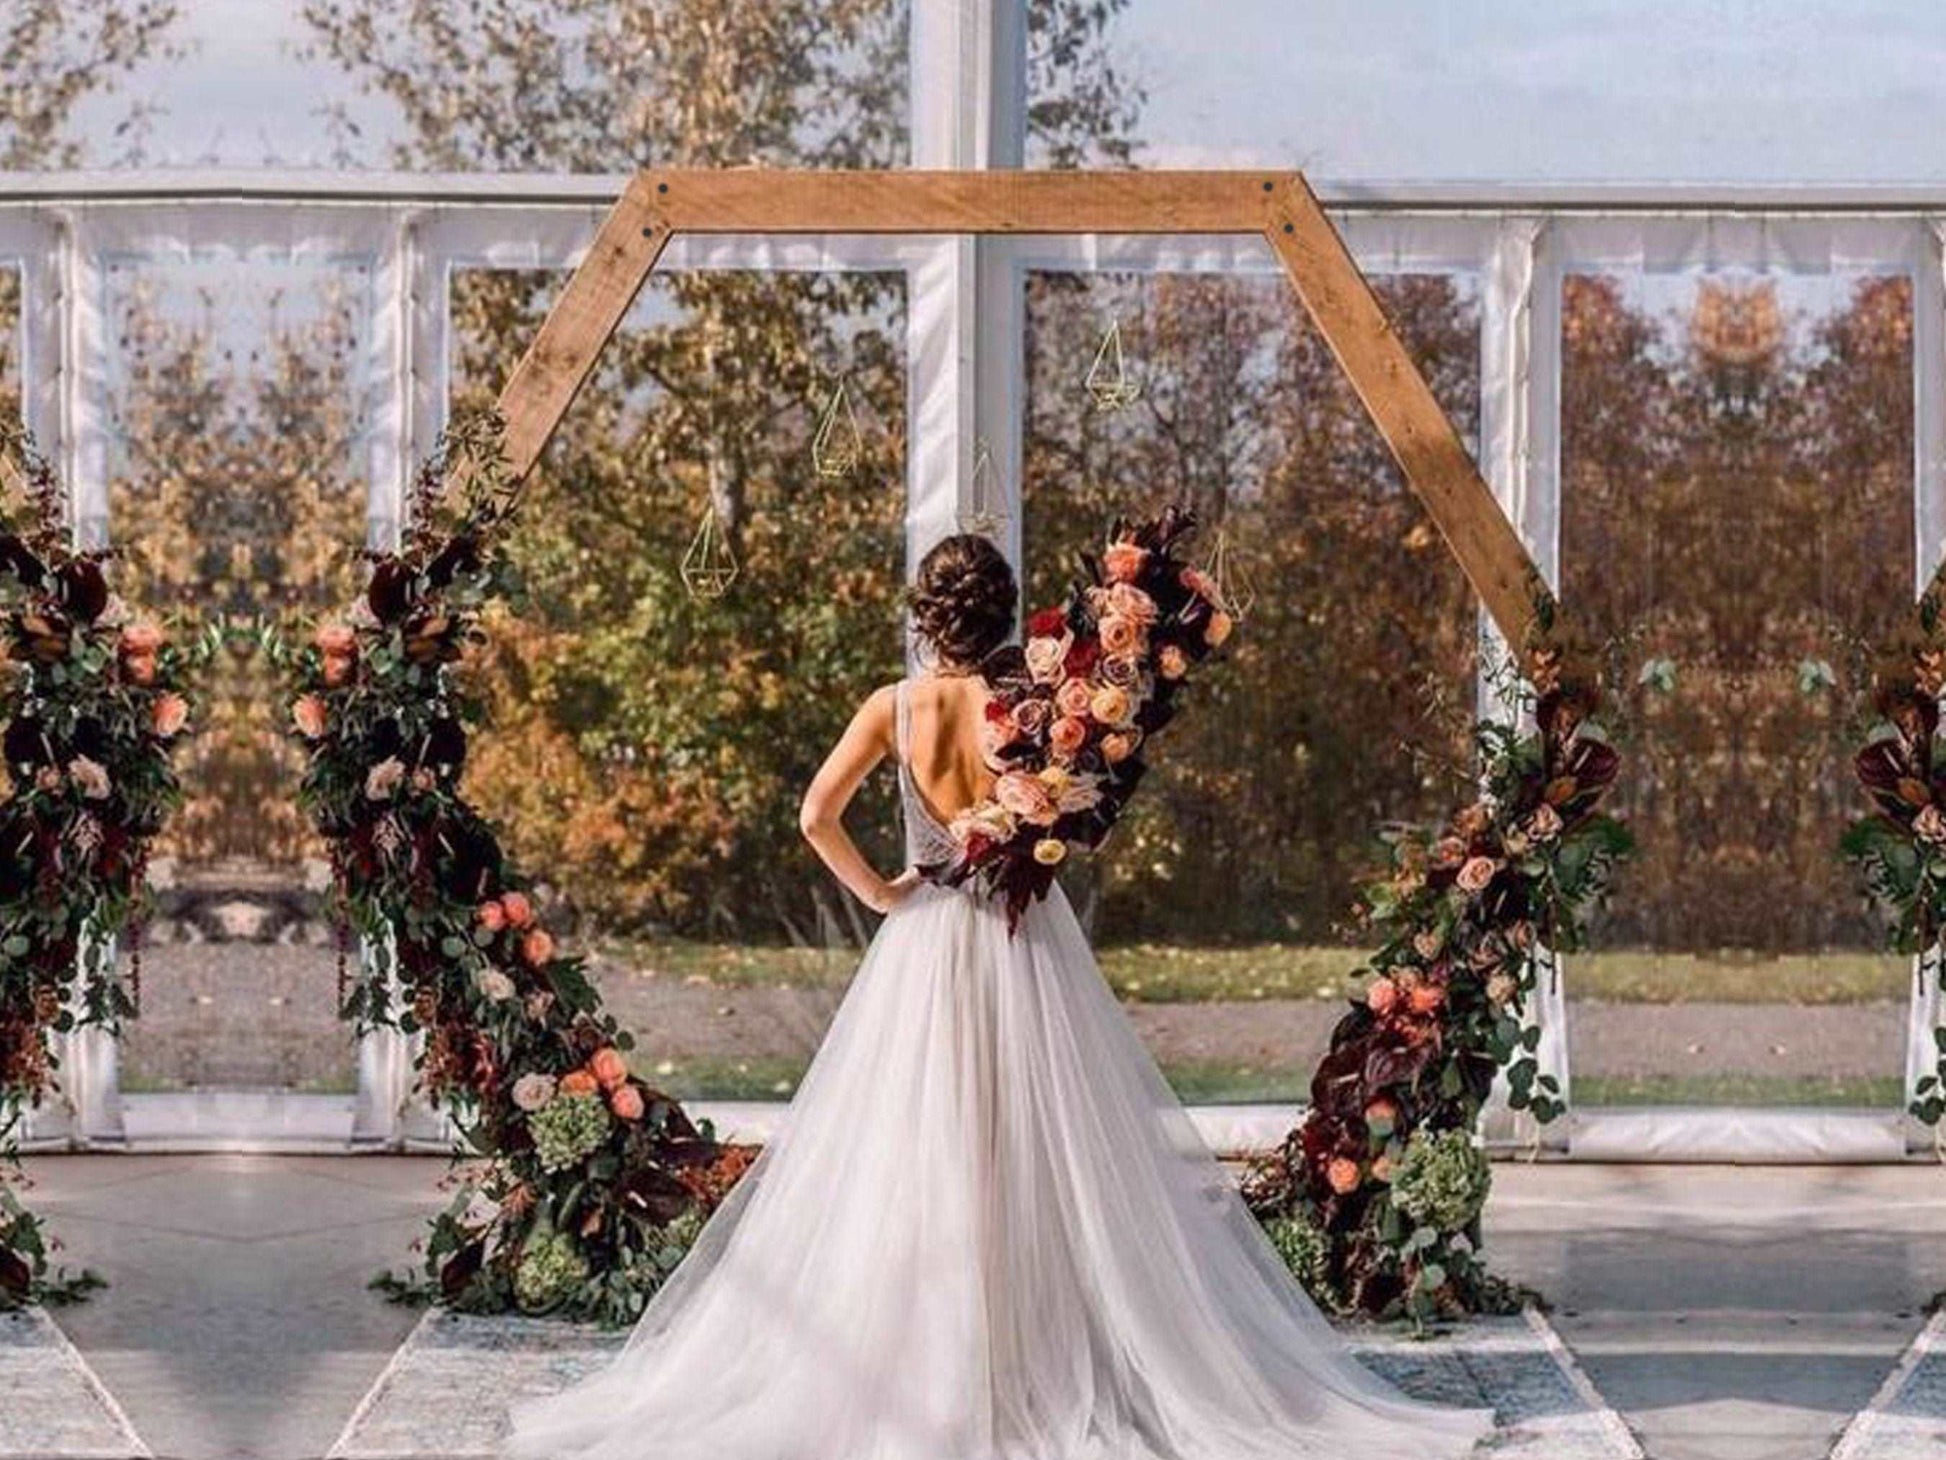 Portable Single Hexagon Wedding Arbor DIY Plans - Wedding Arch Decor